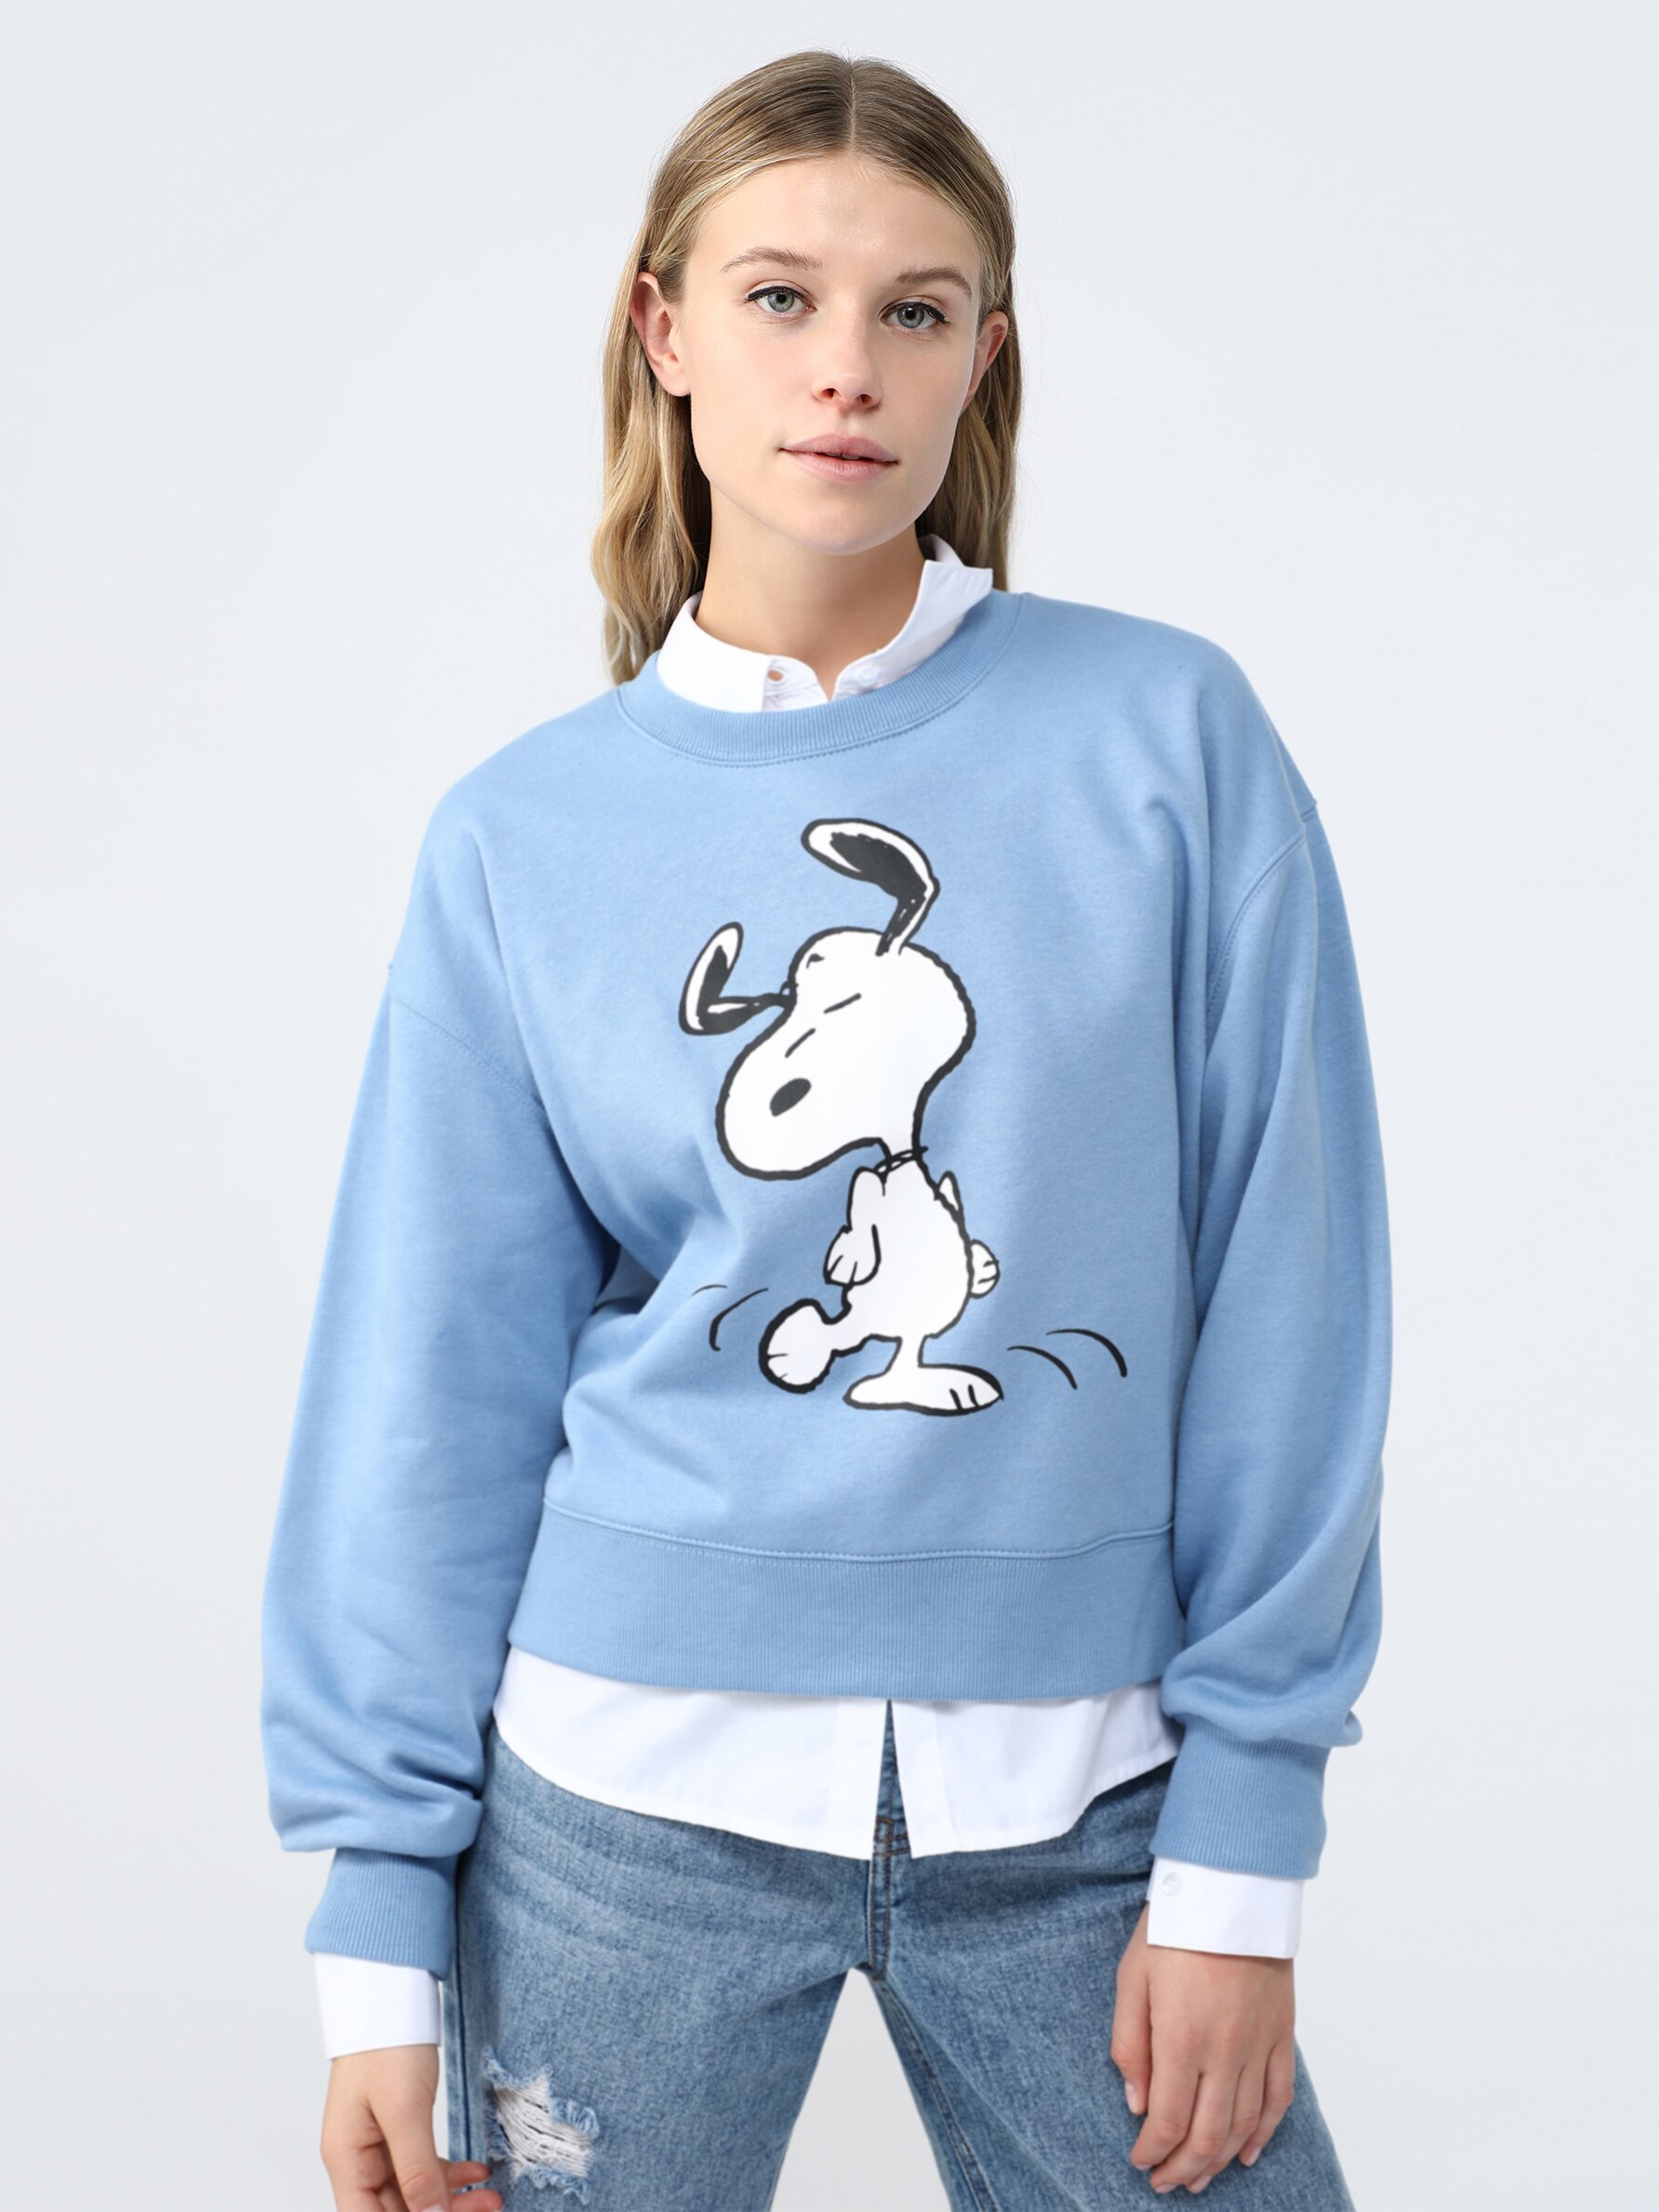 Sudadera de Snoopy - Peanuts™ - Sudaderas ROPA - Mujer - | Lefties Andorra